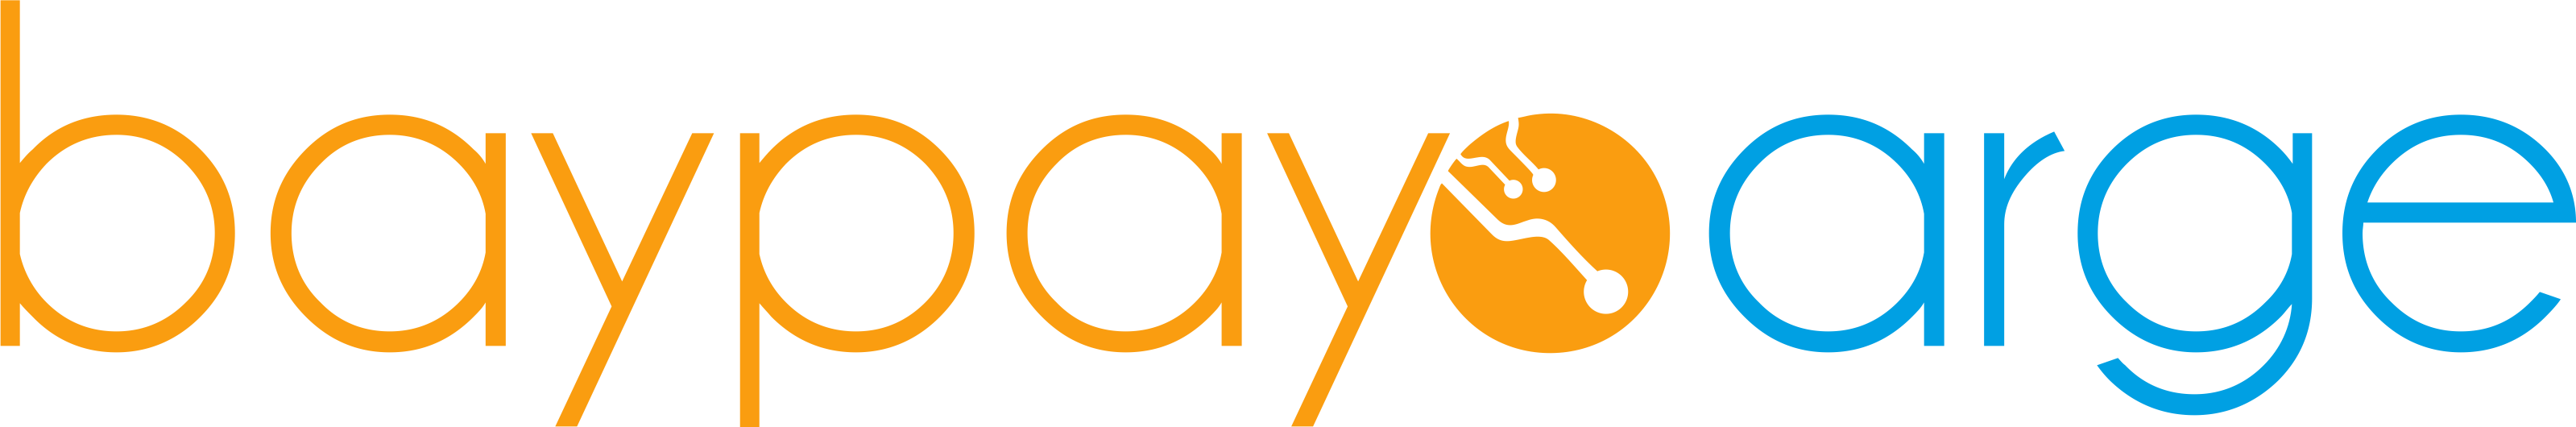 baypayo arge